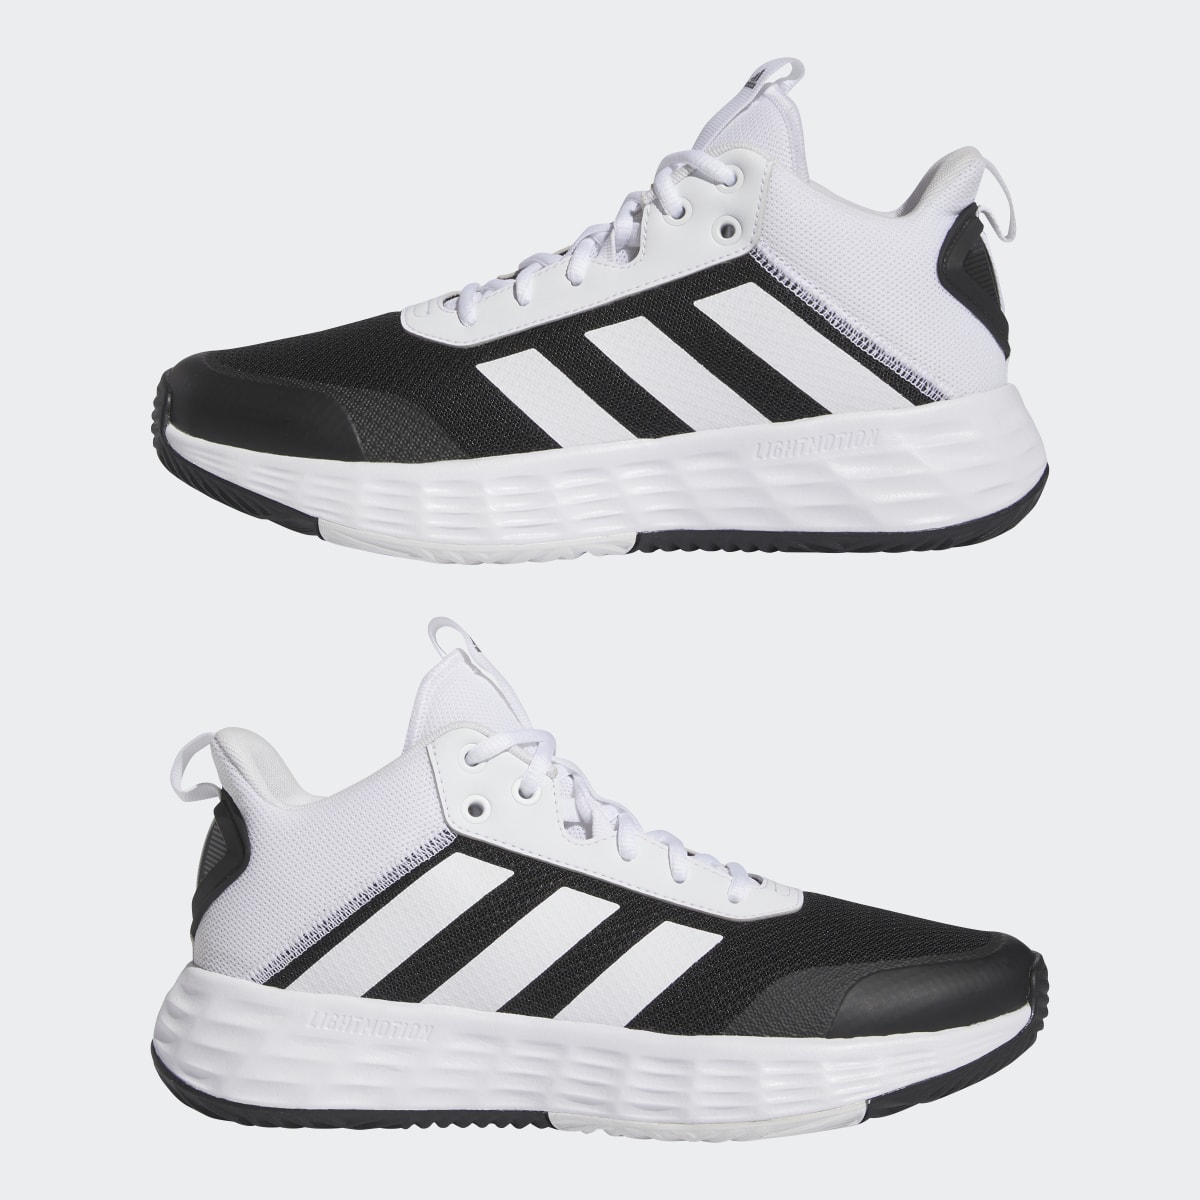 Adidas Ownthegame Ayakkabı. 8